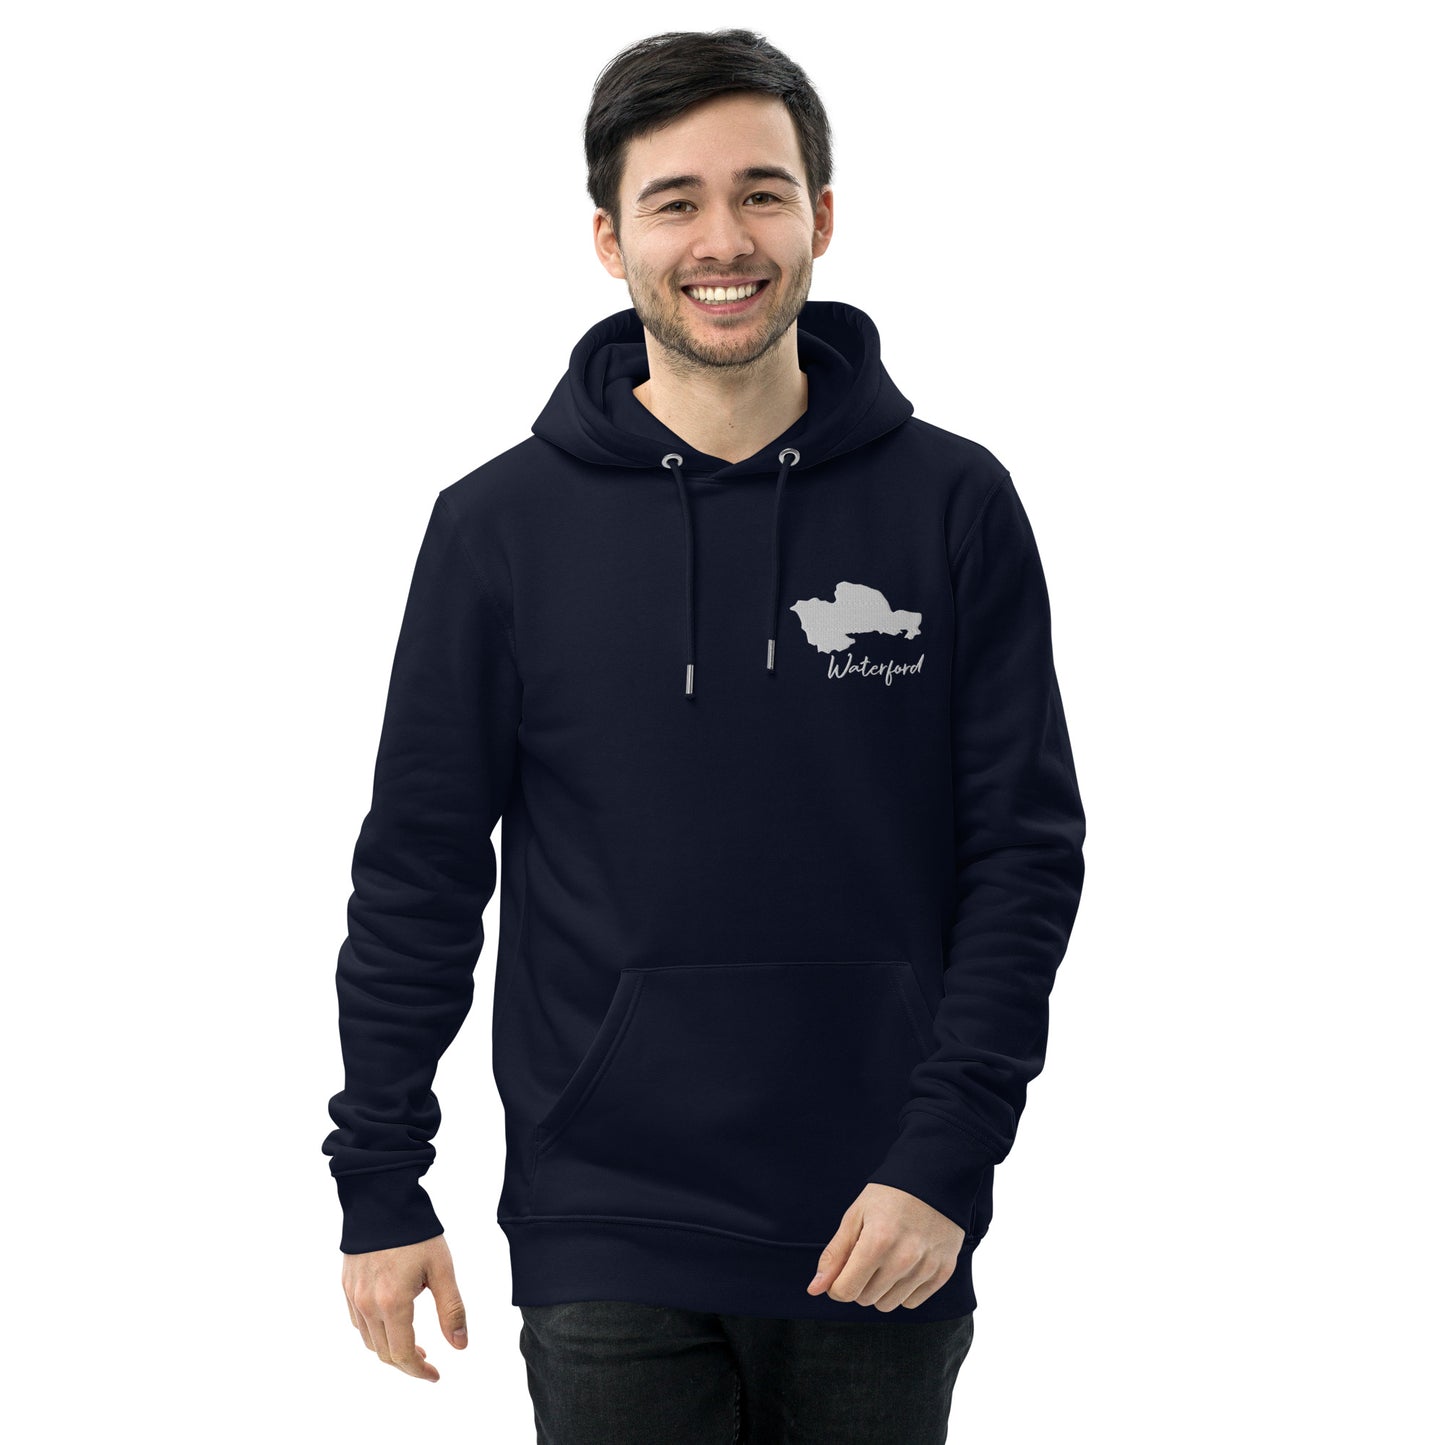 Waterford Unisex essential eco hoodie